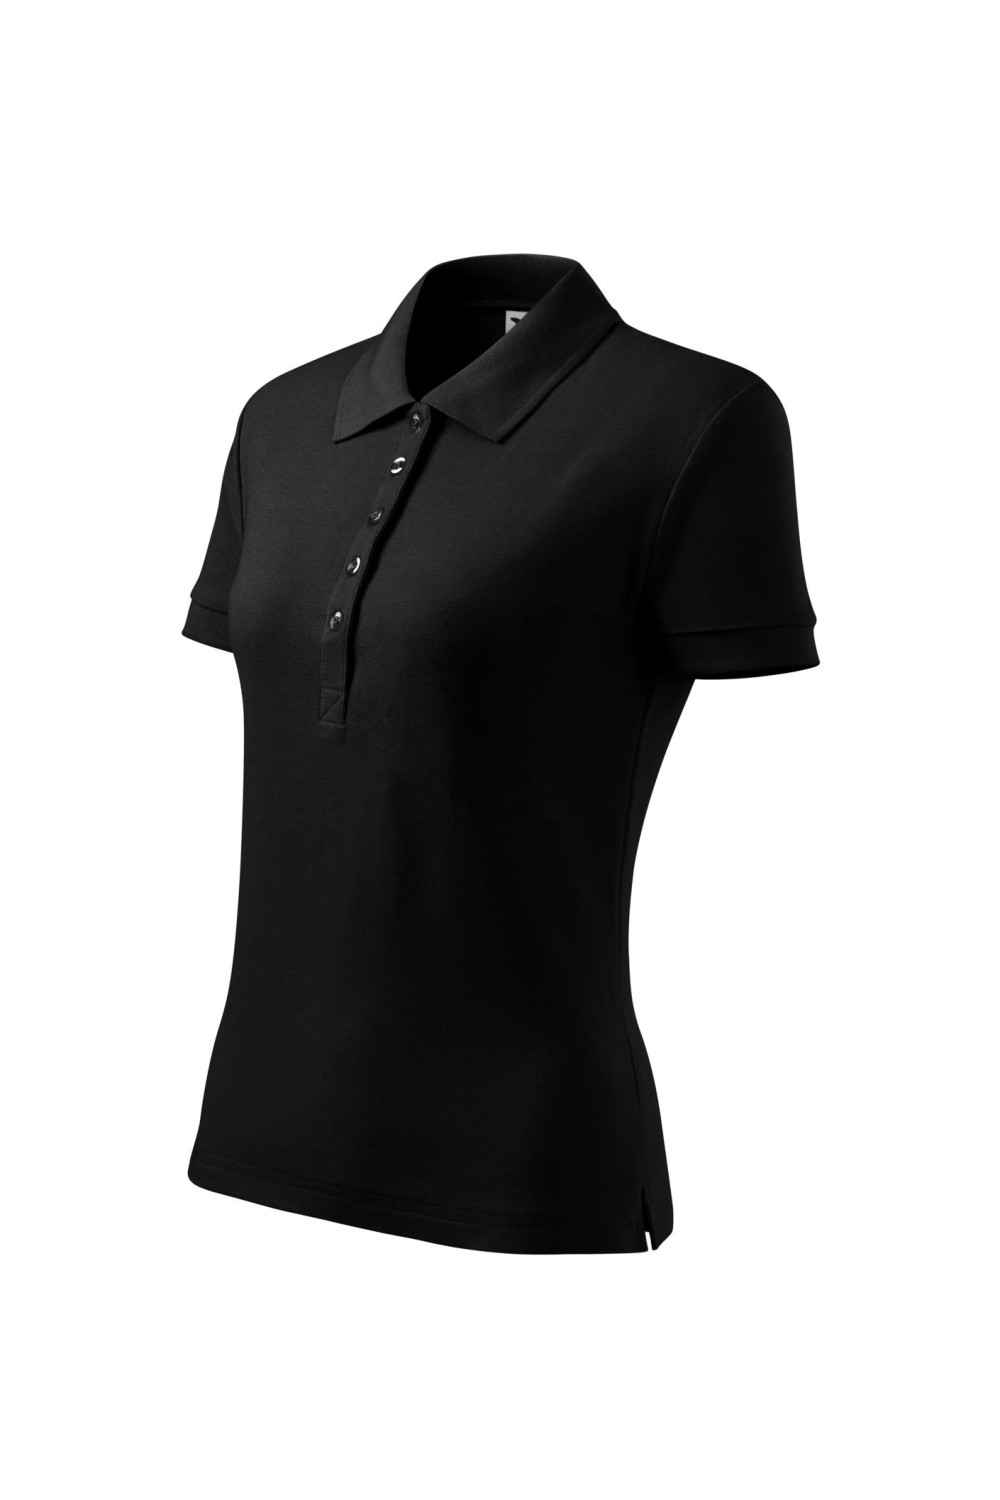 COTTON 213 MALFINI ADLER Koszulka Polo damska klasyczna 100% bawełna czarny